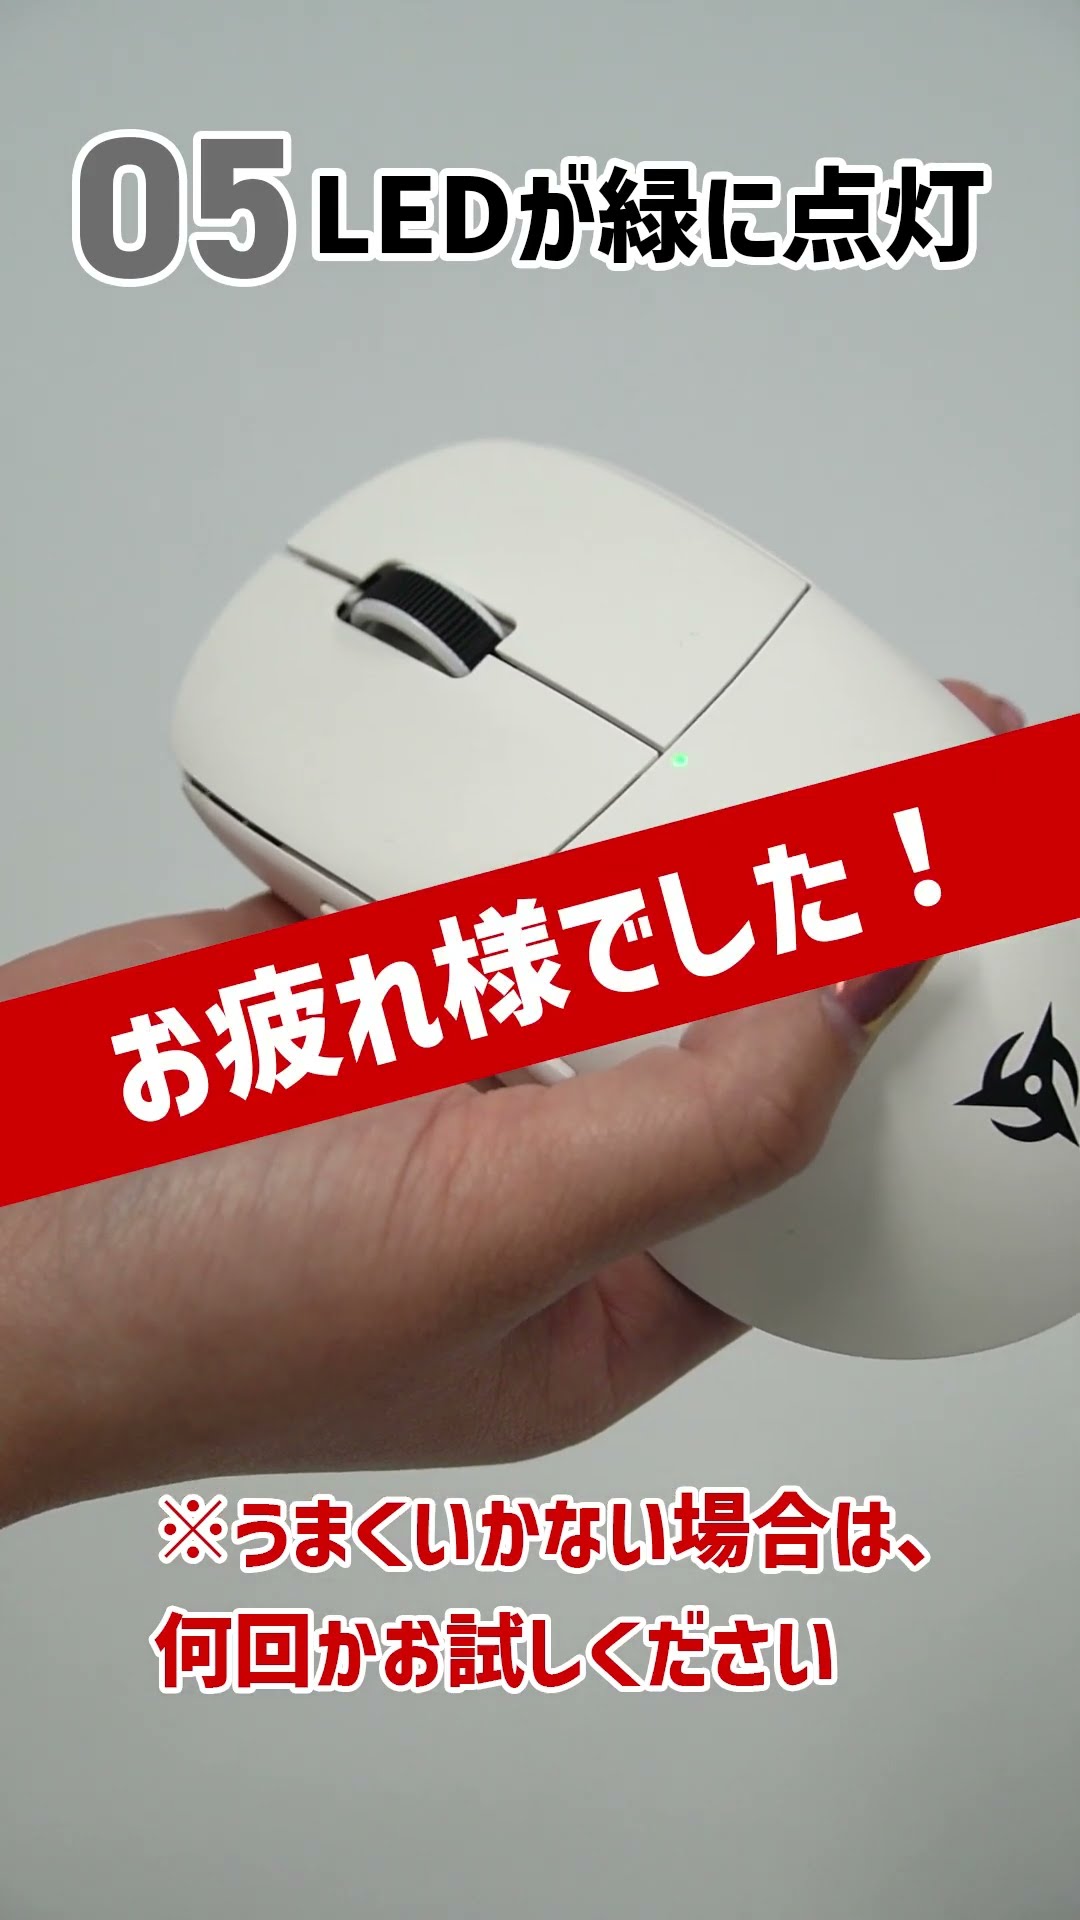 公式価格の対象 【新品未開封】Gamesense×Aimlabs マウスパッド アスカ